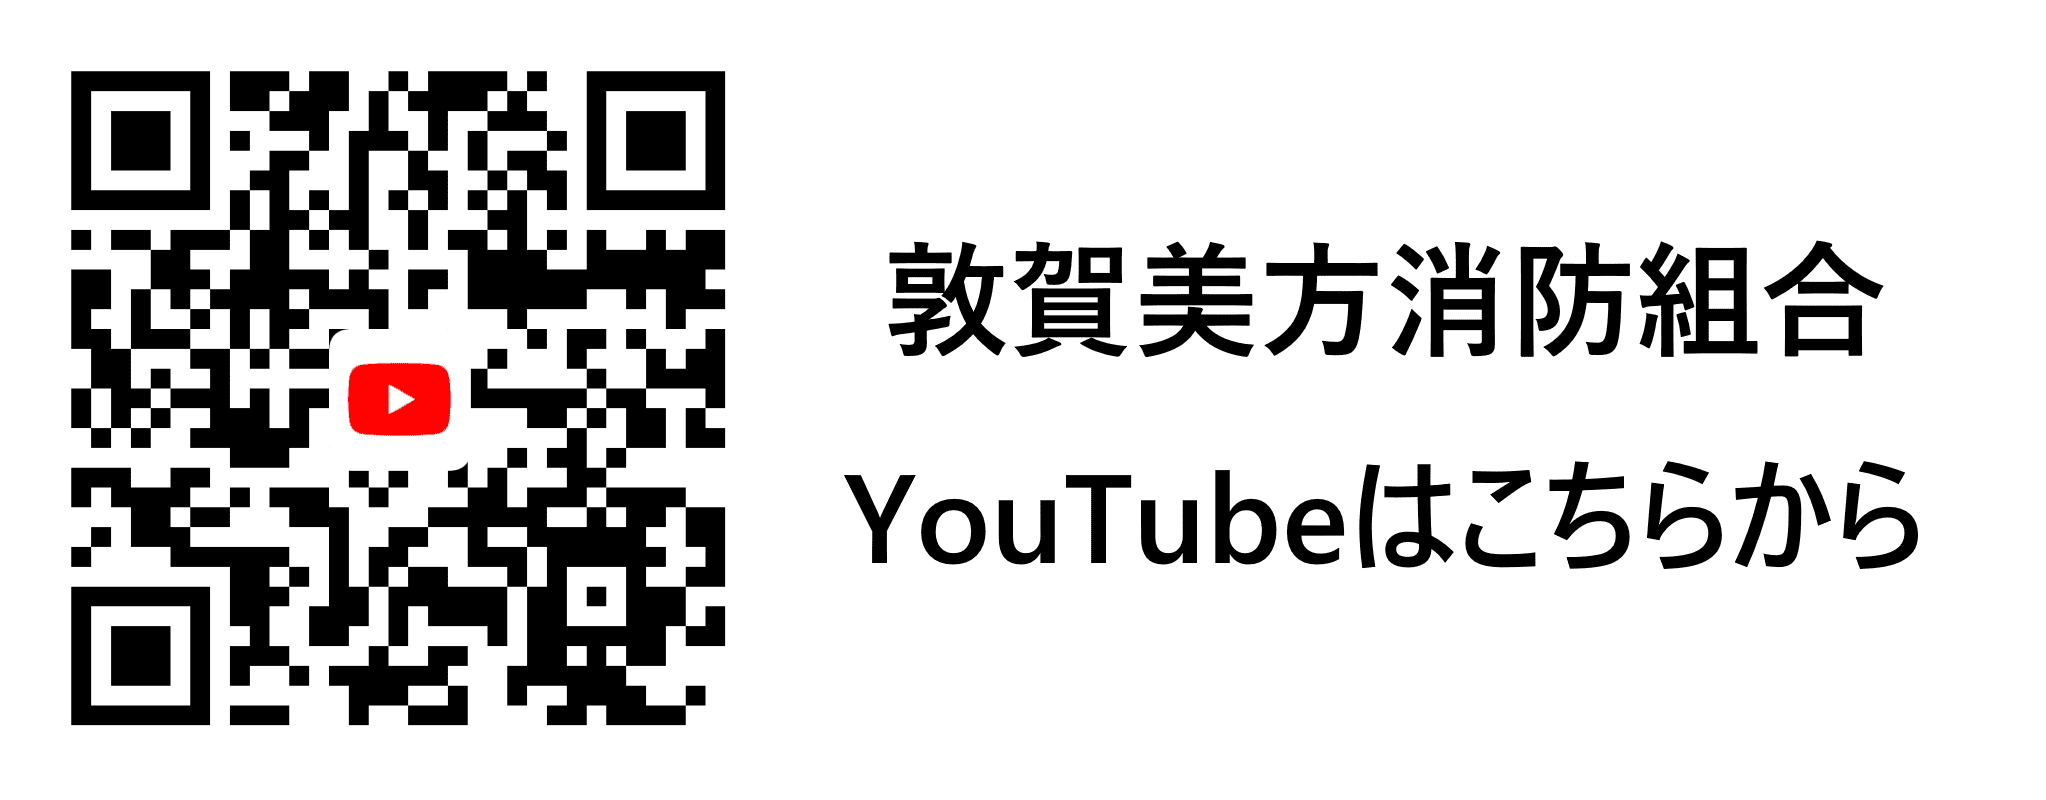 敦賀美方消防組合YouTube